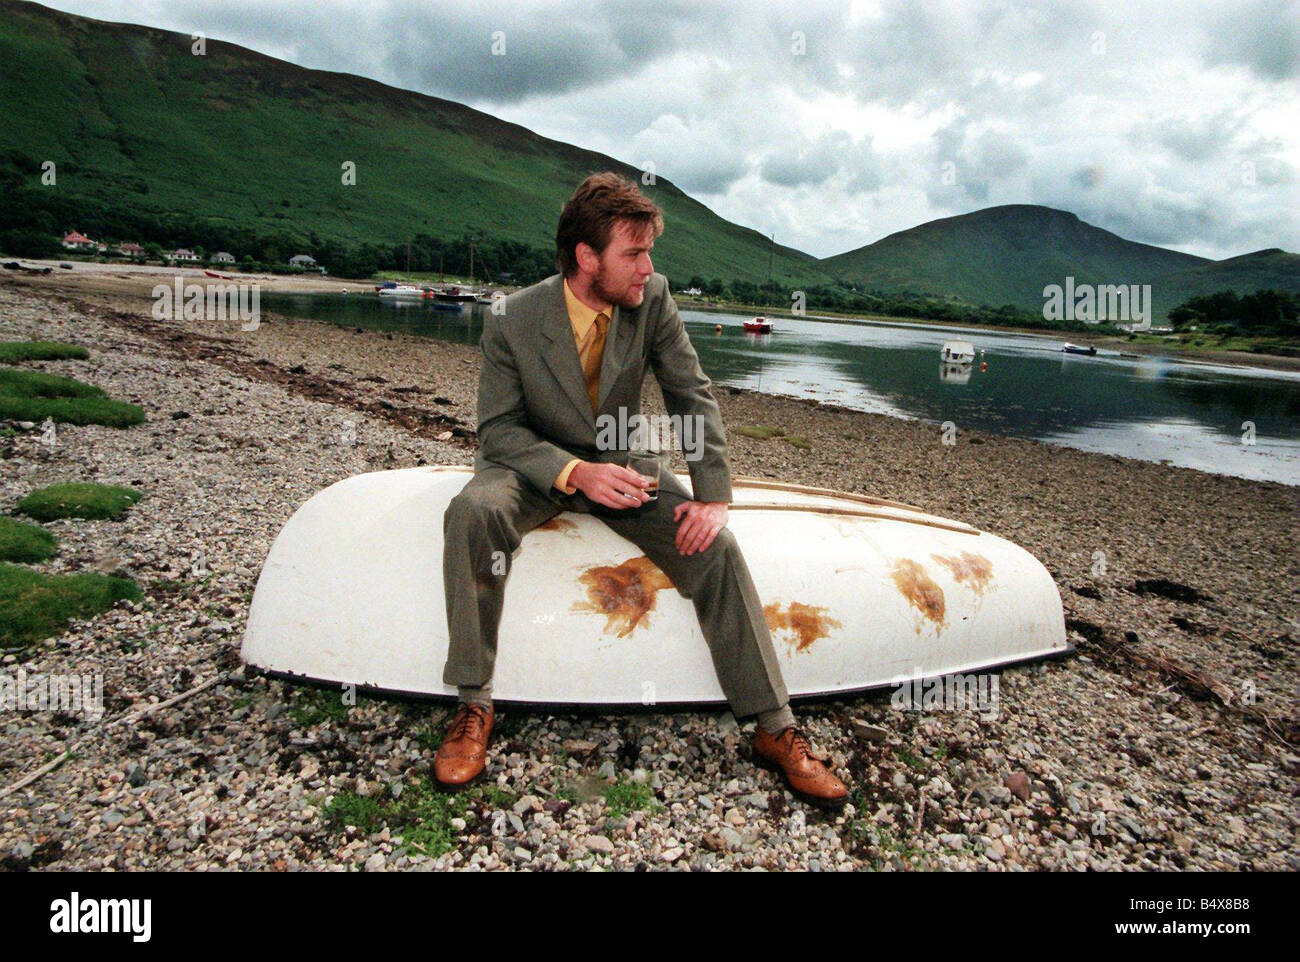 Ewan McGregor sull'isola di Arran Luglio 1998 con bottiglia di Loch Ranza single malt whisky seduto sulla barca capovolta Foto Stock